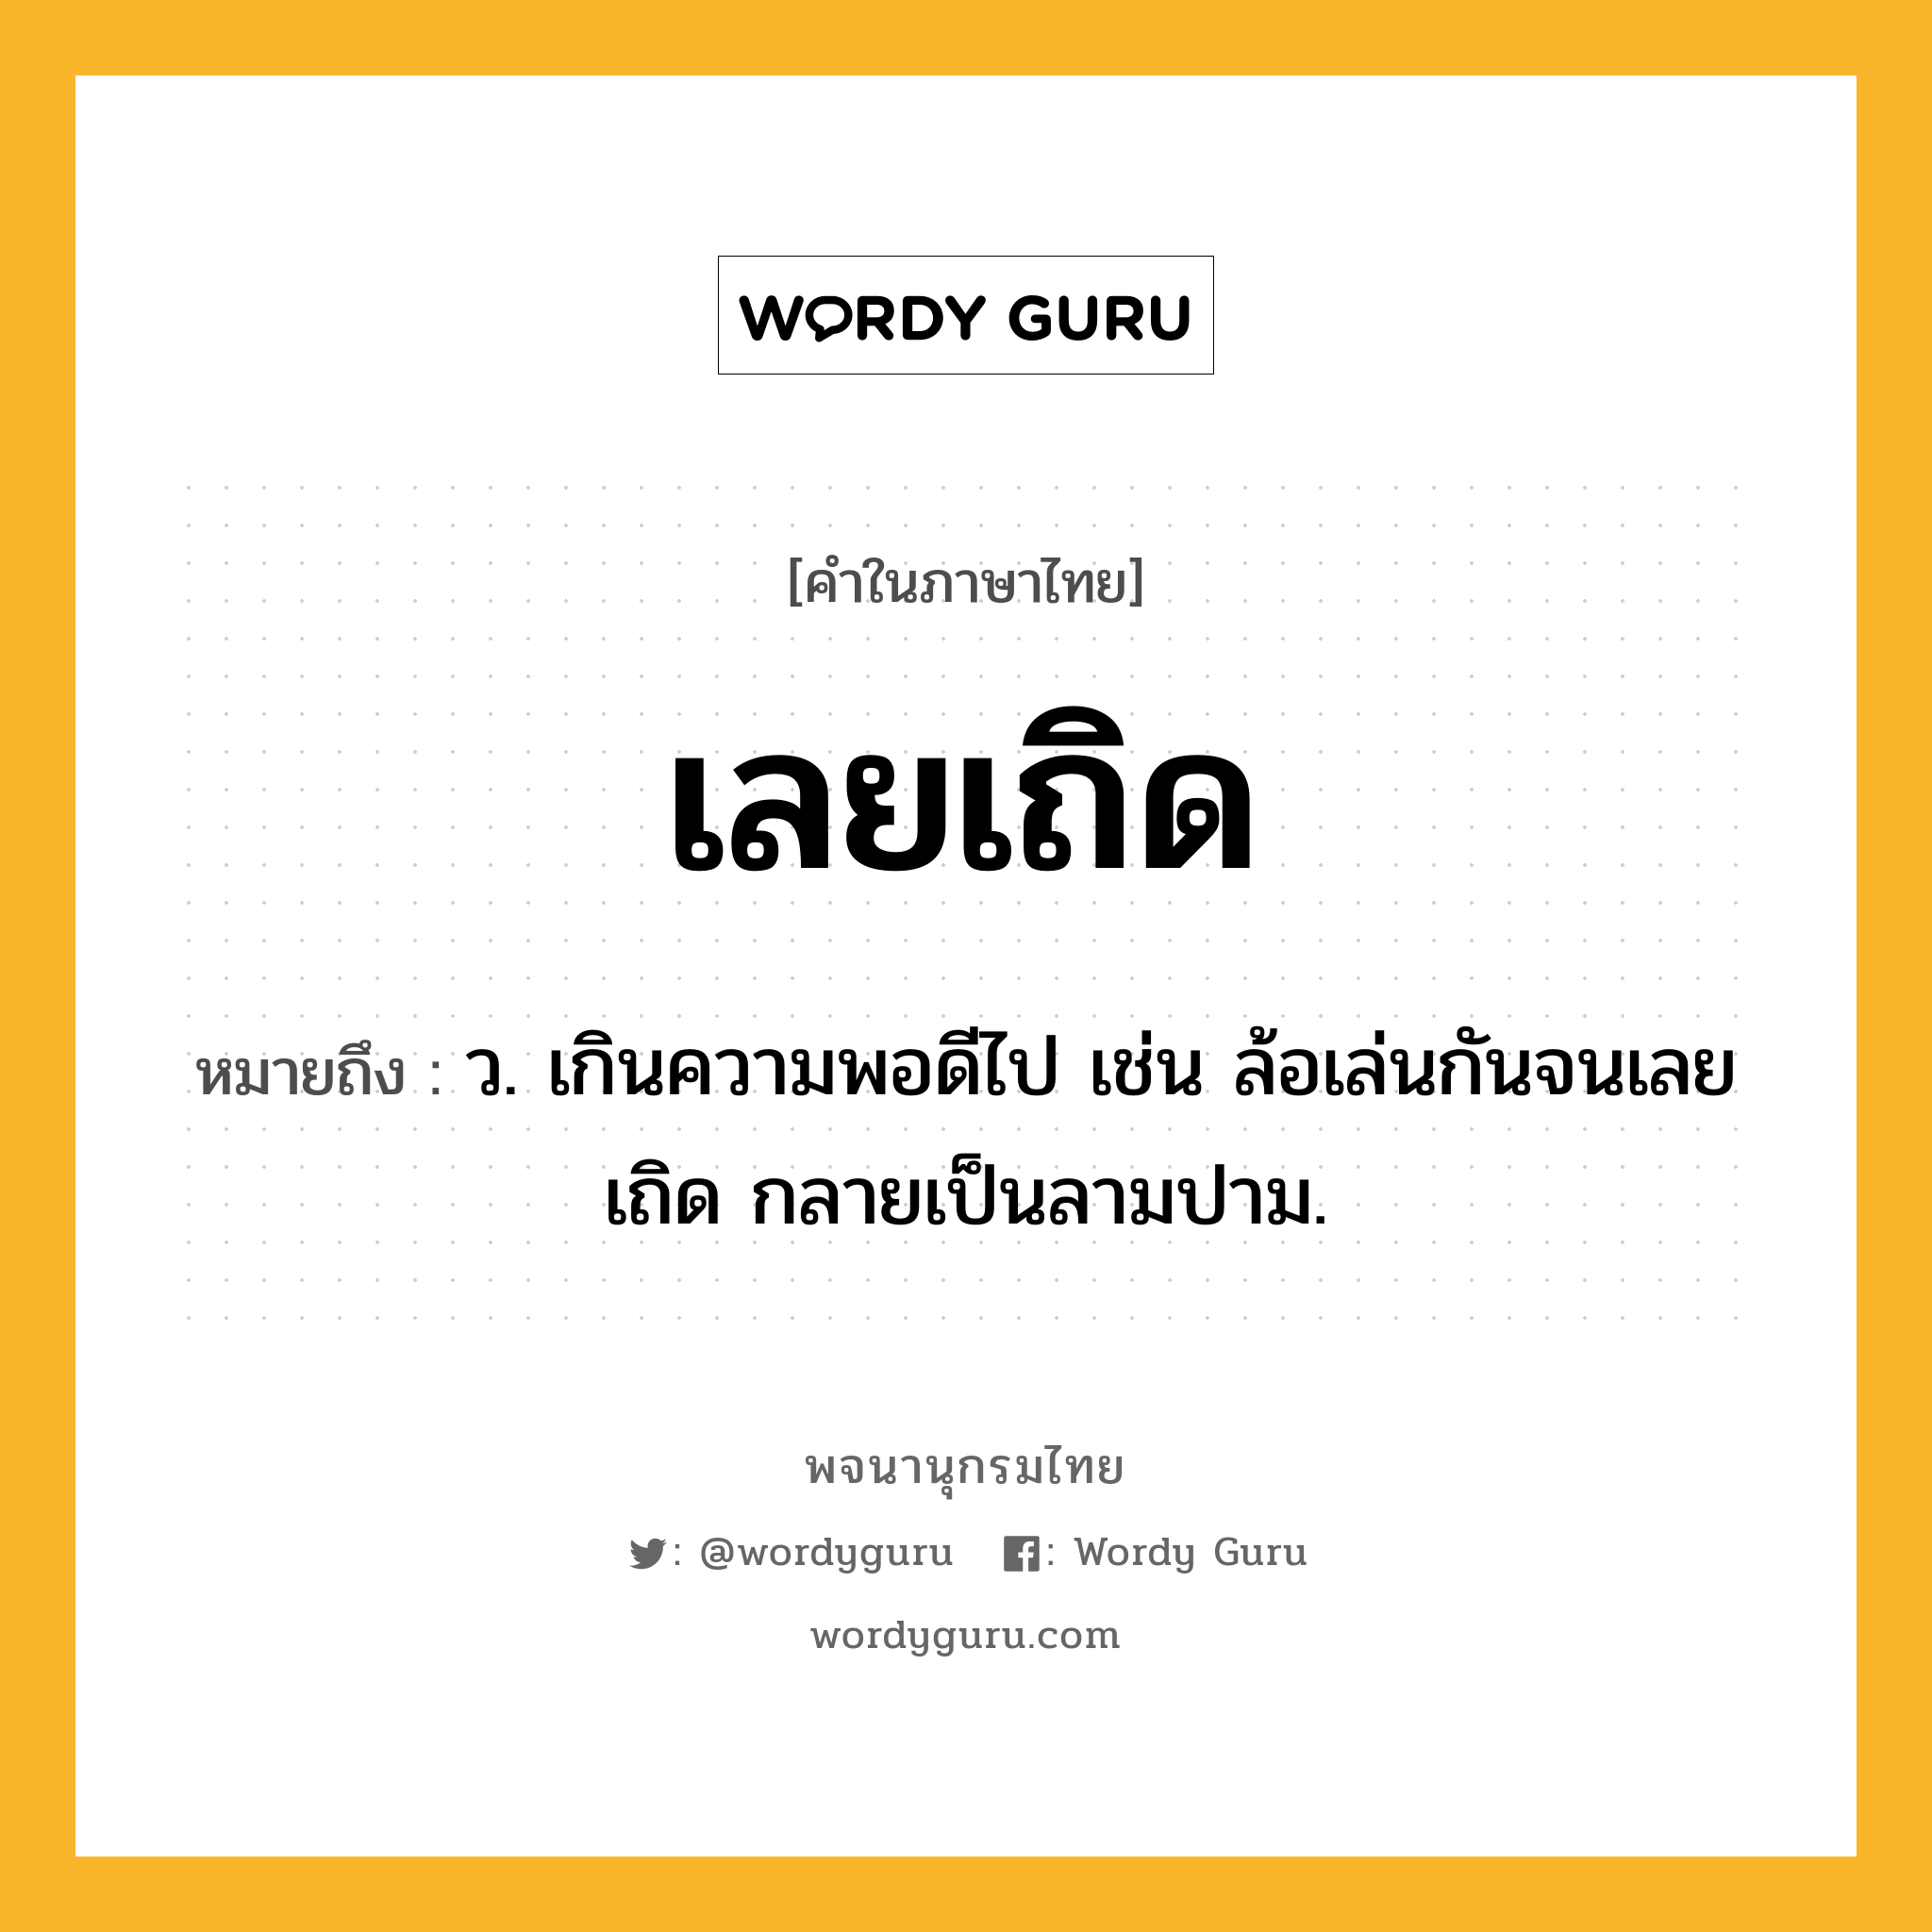 เลยเถิด ความหมาย หมายถึงอะไร?, คำในภาษาไทย เลยเถิด หมายถึง ว. เกินความพอดีไป เช่น ล้อเล่นกันจนเลยเถิด กลายเป็นลามปาม.